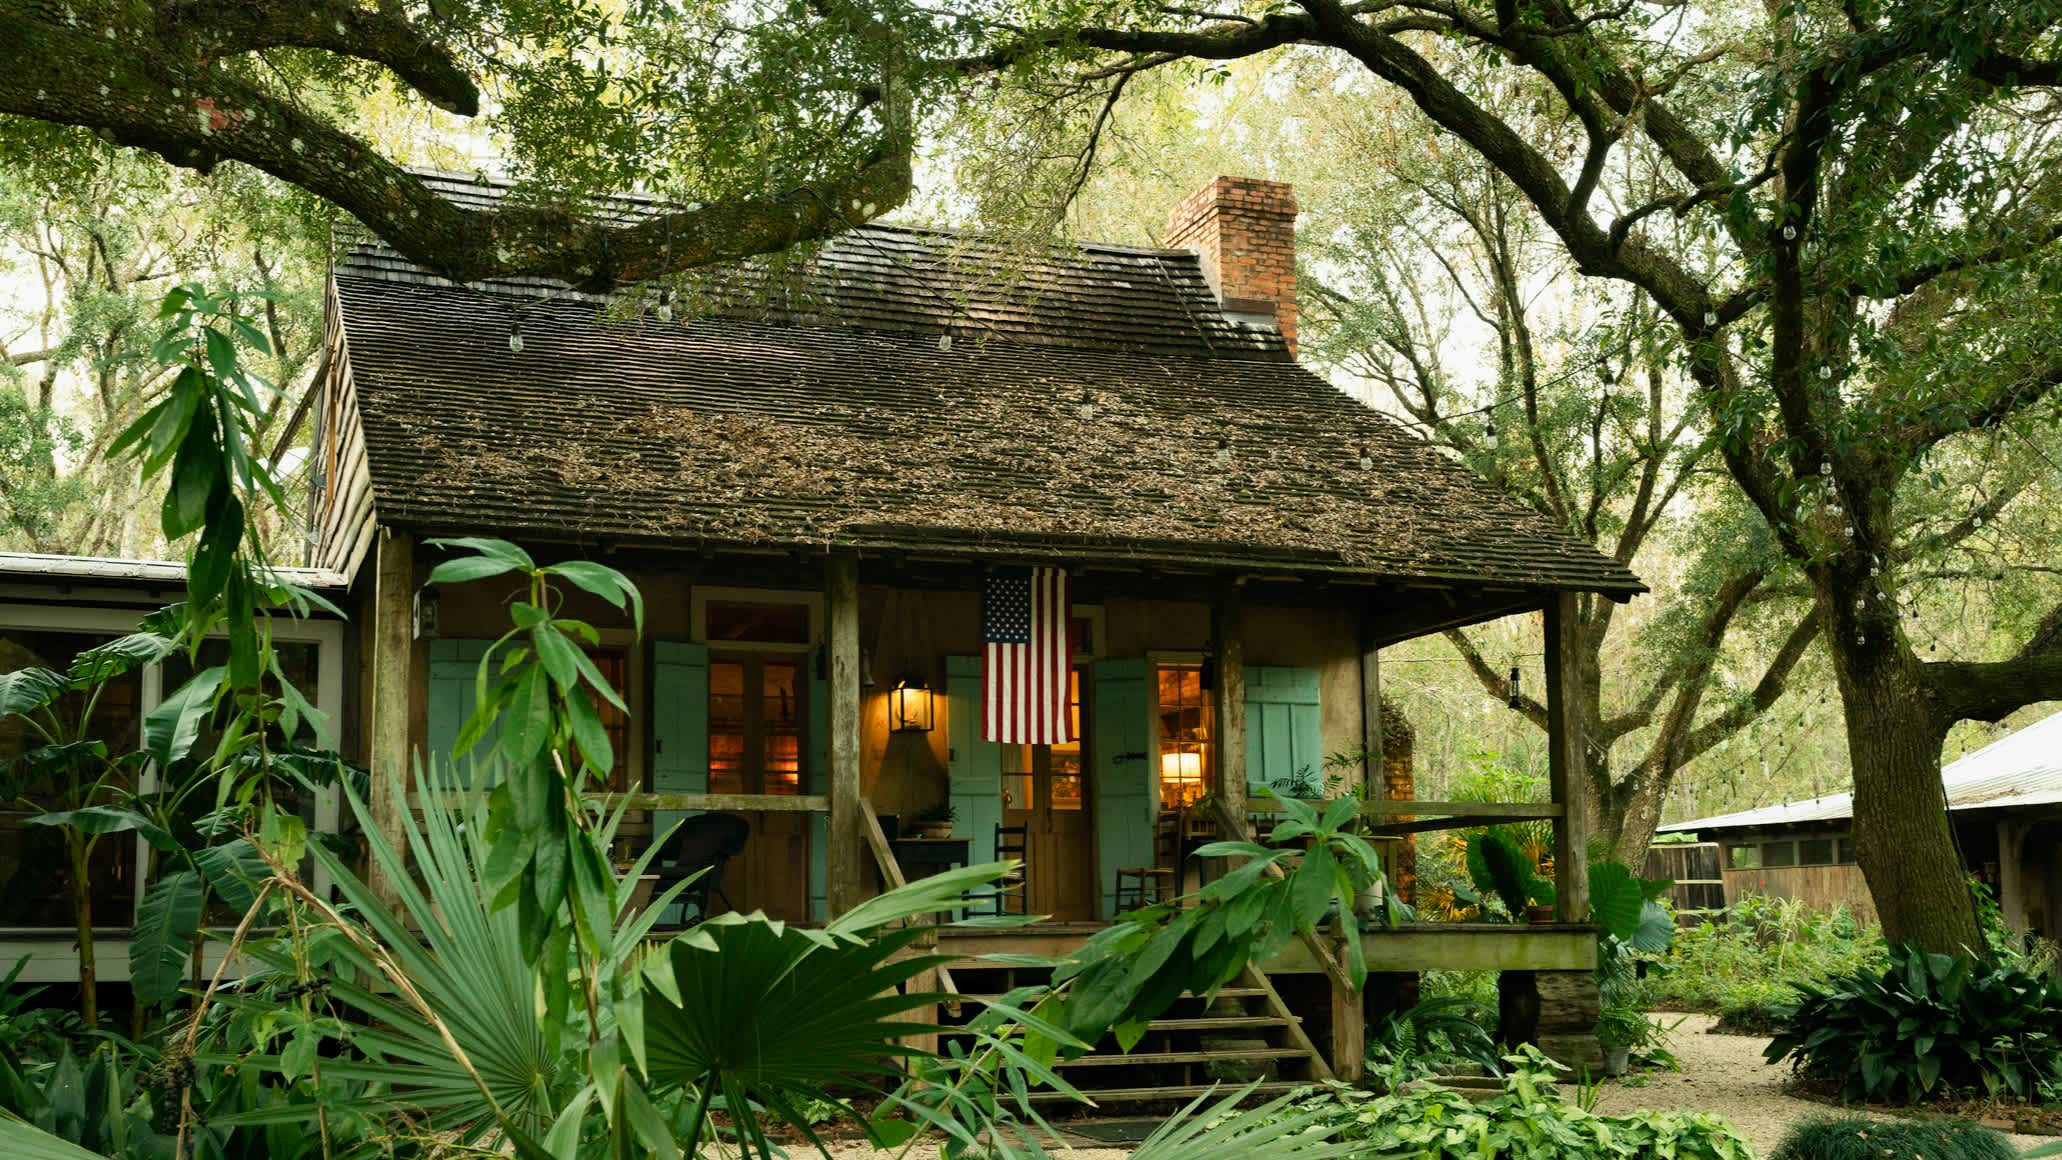 Hütte in Louisiana umgebung von üppiger Vegetation